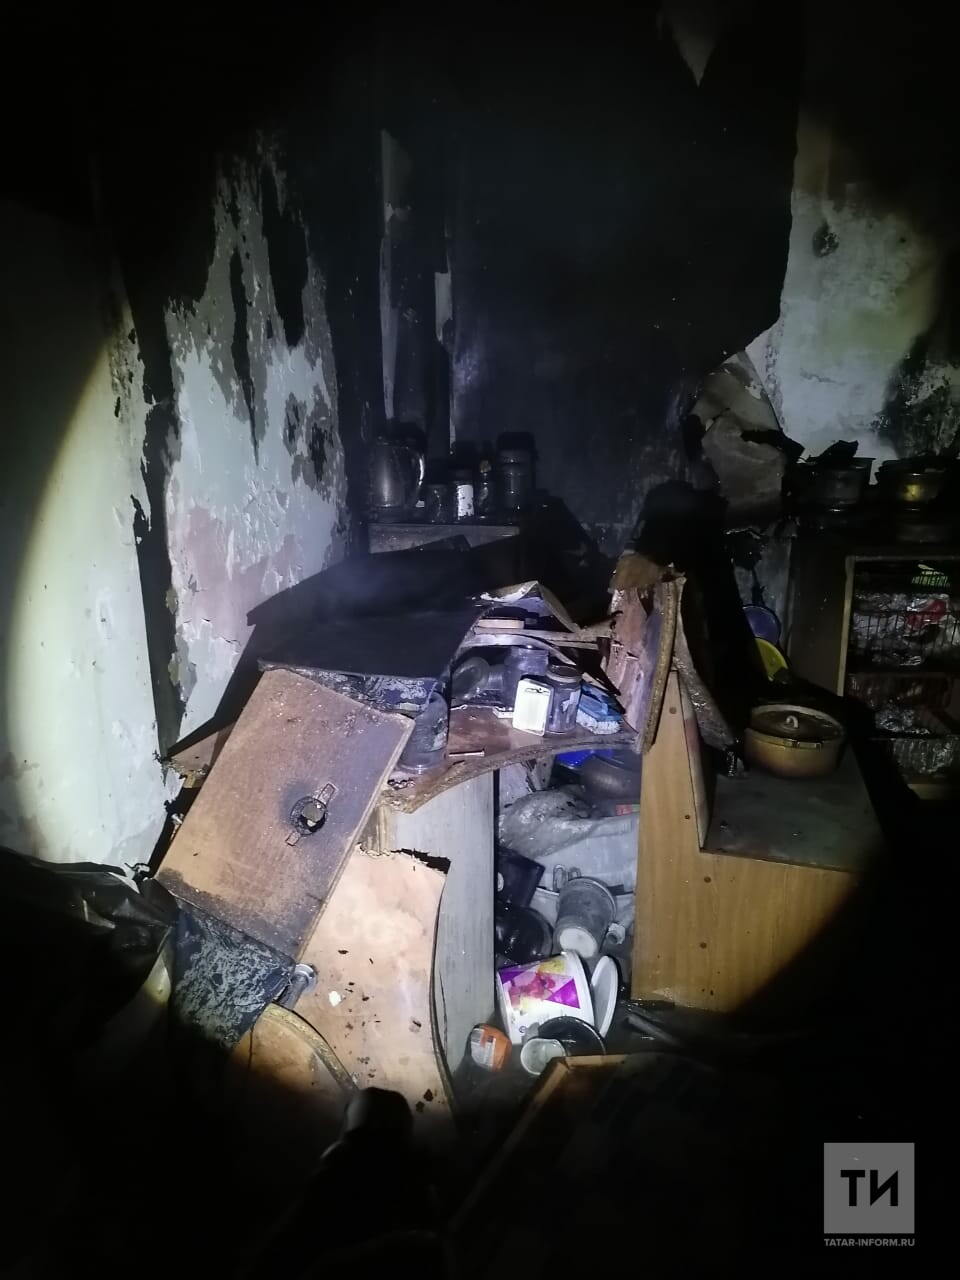 Ночью в челнинской многоэтажке загорелась квартира, пожарные спасли трех человек